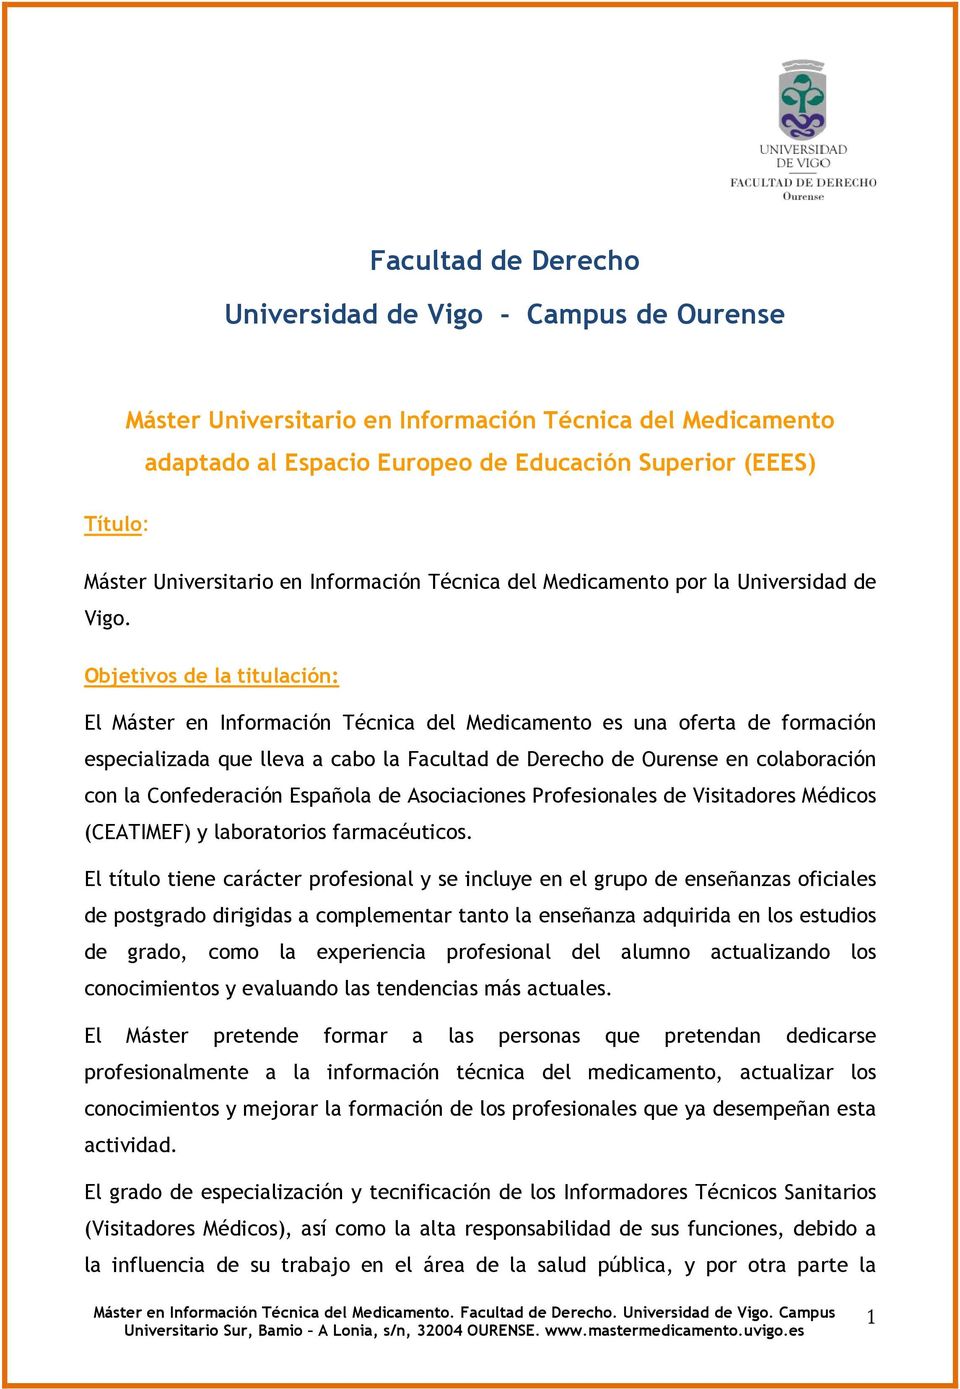 Objetivos de la titulación: El Máster en Información Técnica del Medicamento es una oferta de formación especializada que lleva a cabo la Facultad de Derecho de Ourense en colaboración con la